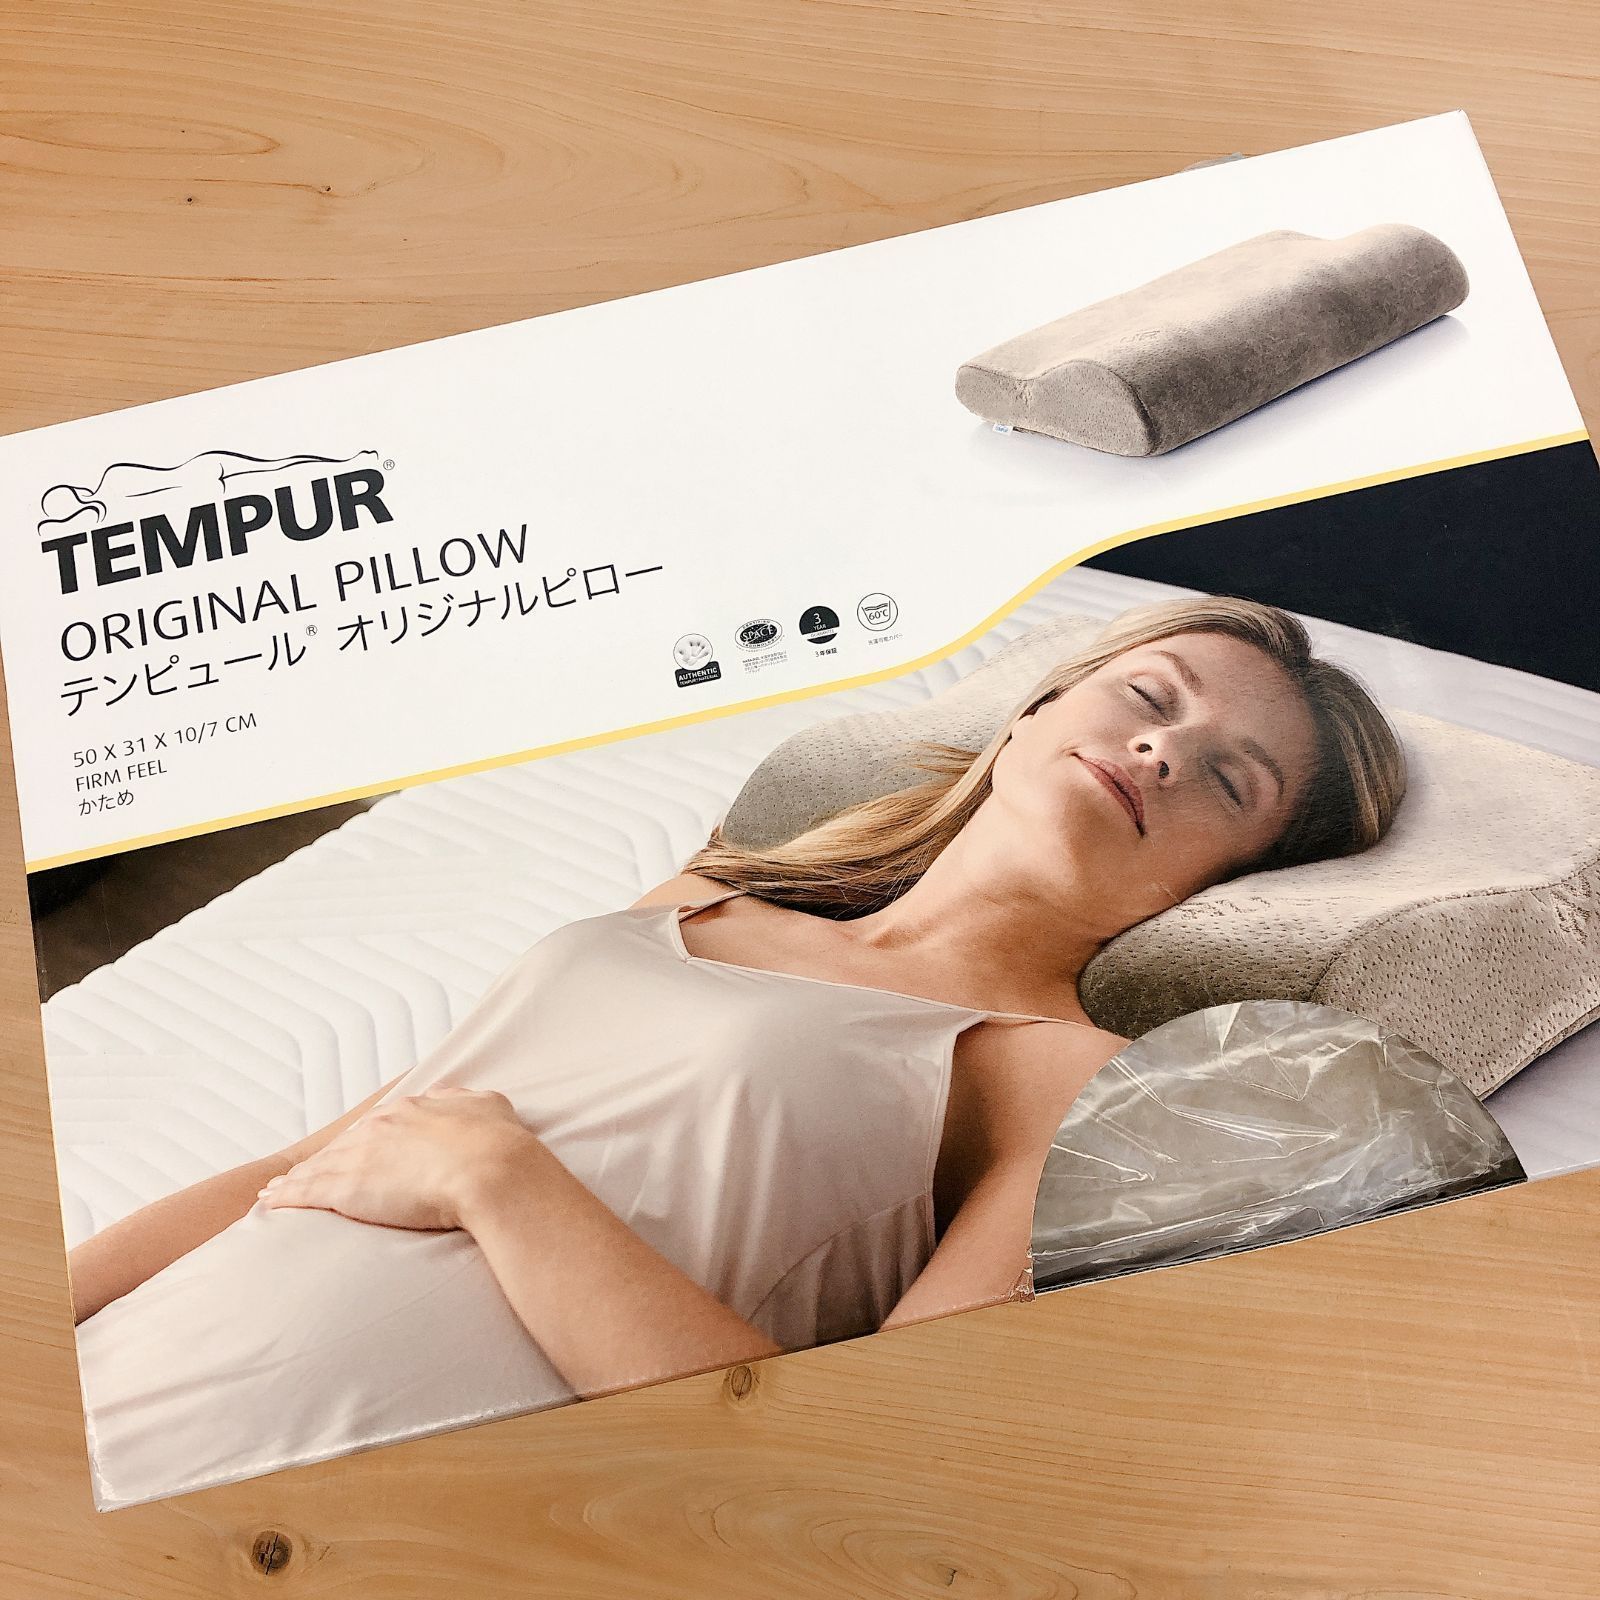 テンピュール TEMPUR ミレニアムピロー イエローベロア S 枕ホームページ製品説明